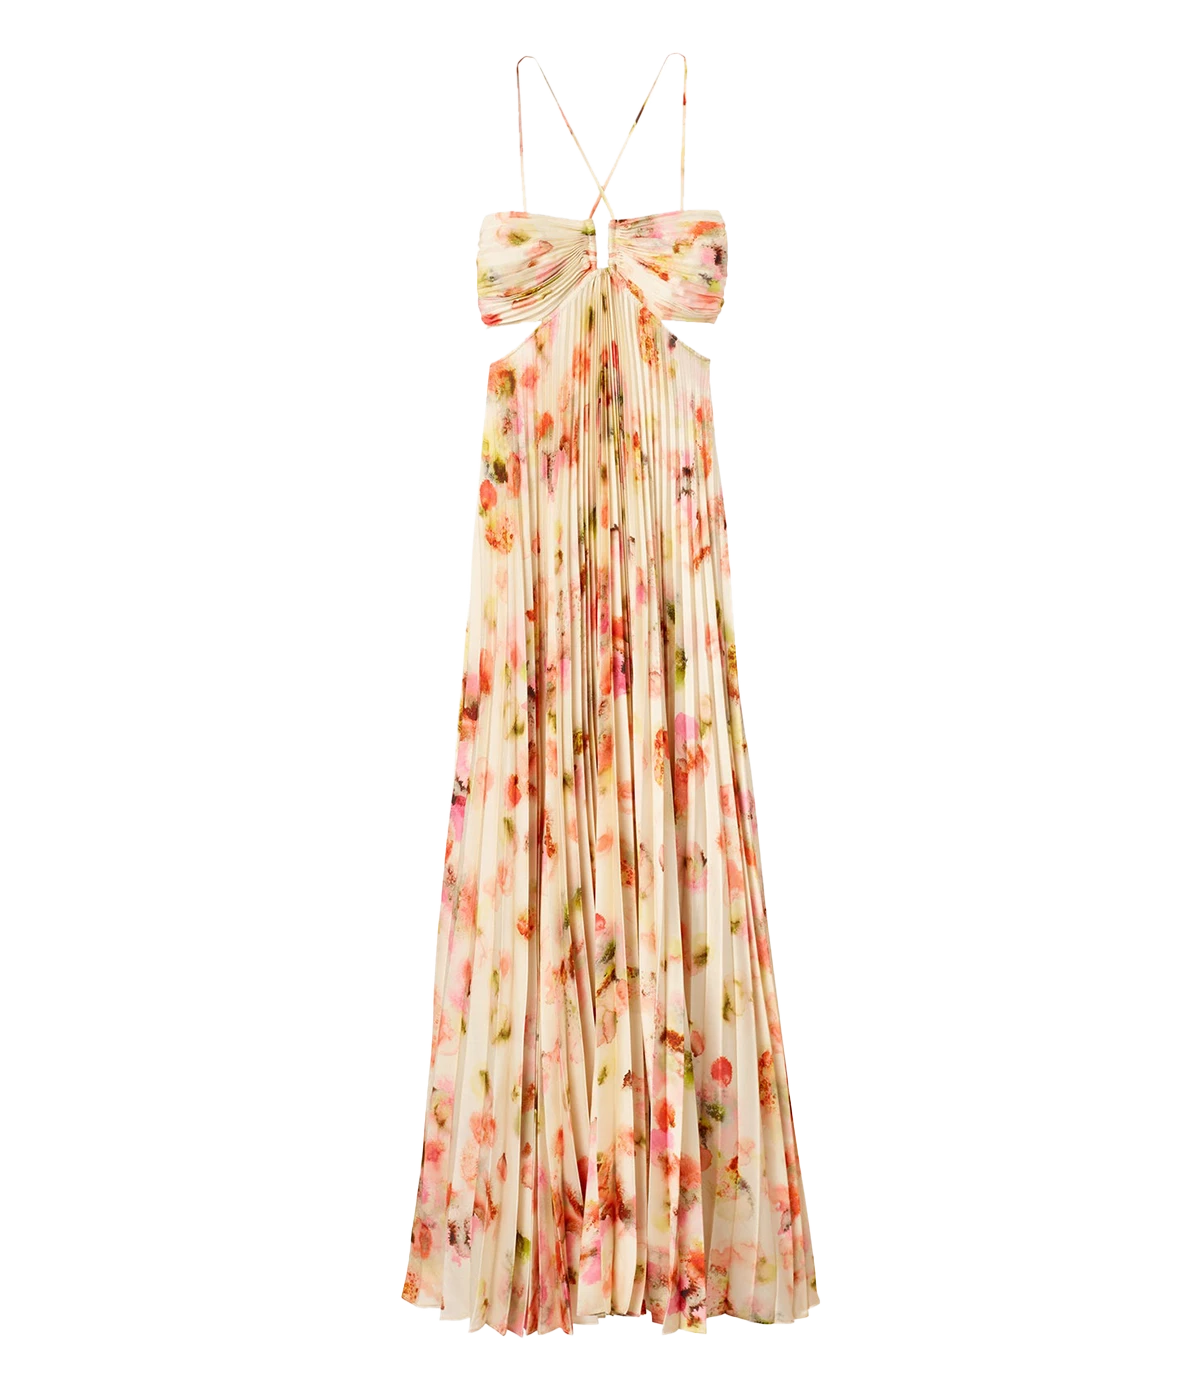 Moira Dress in Pale Peach Multi